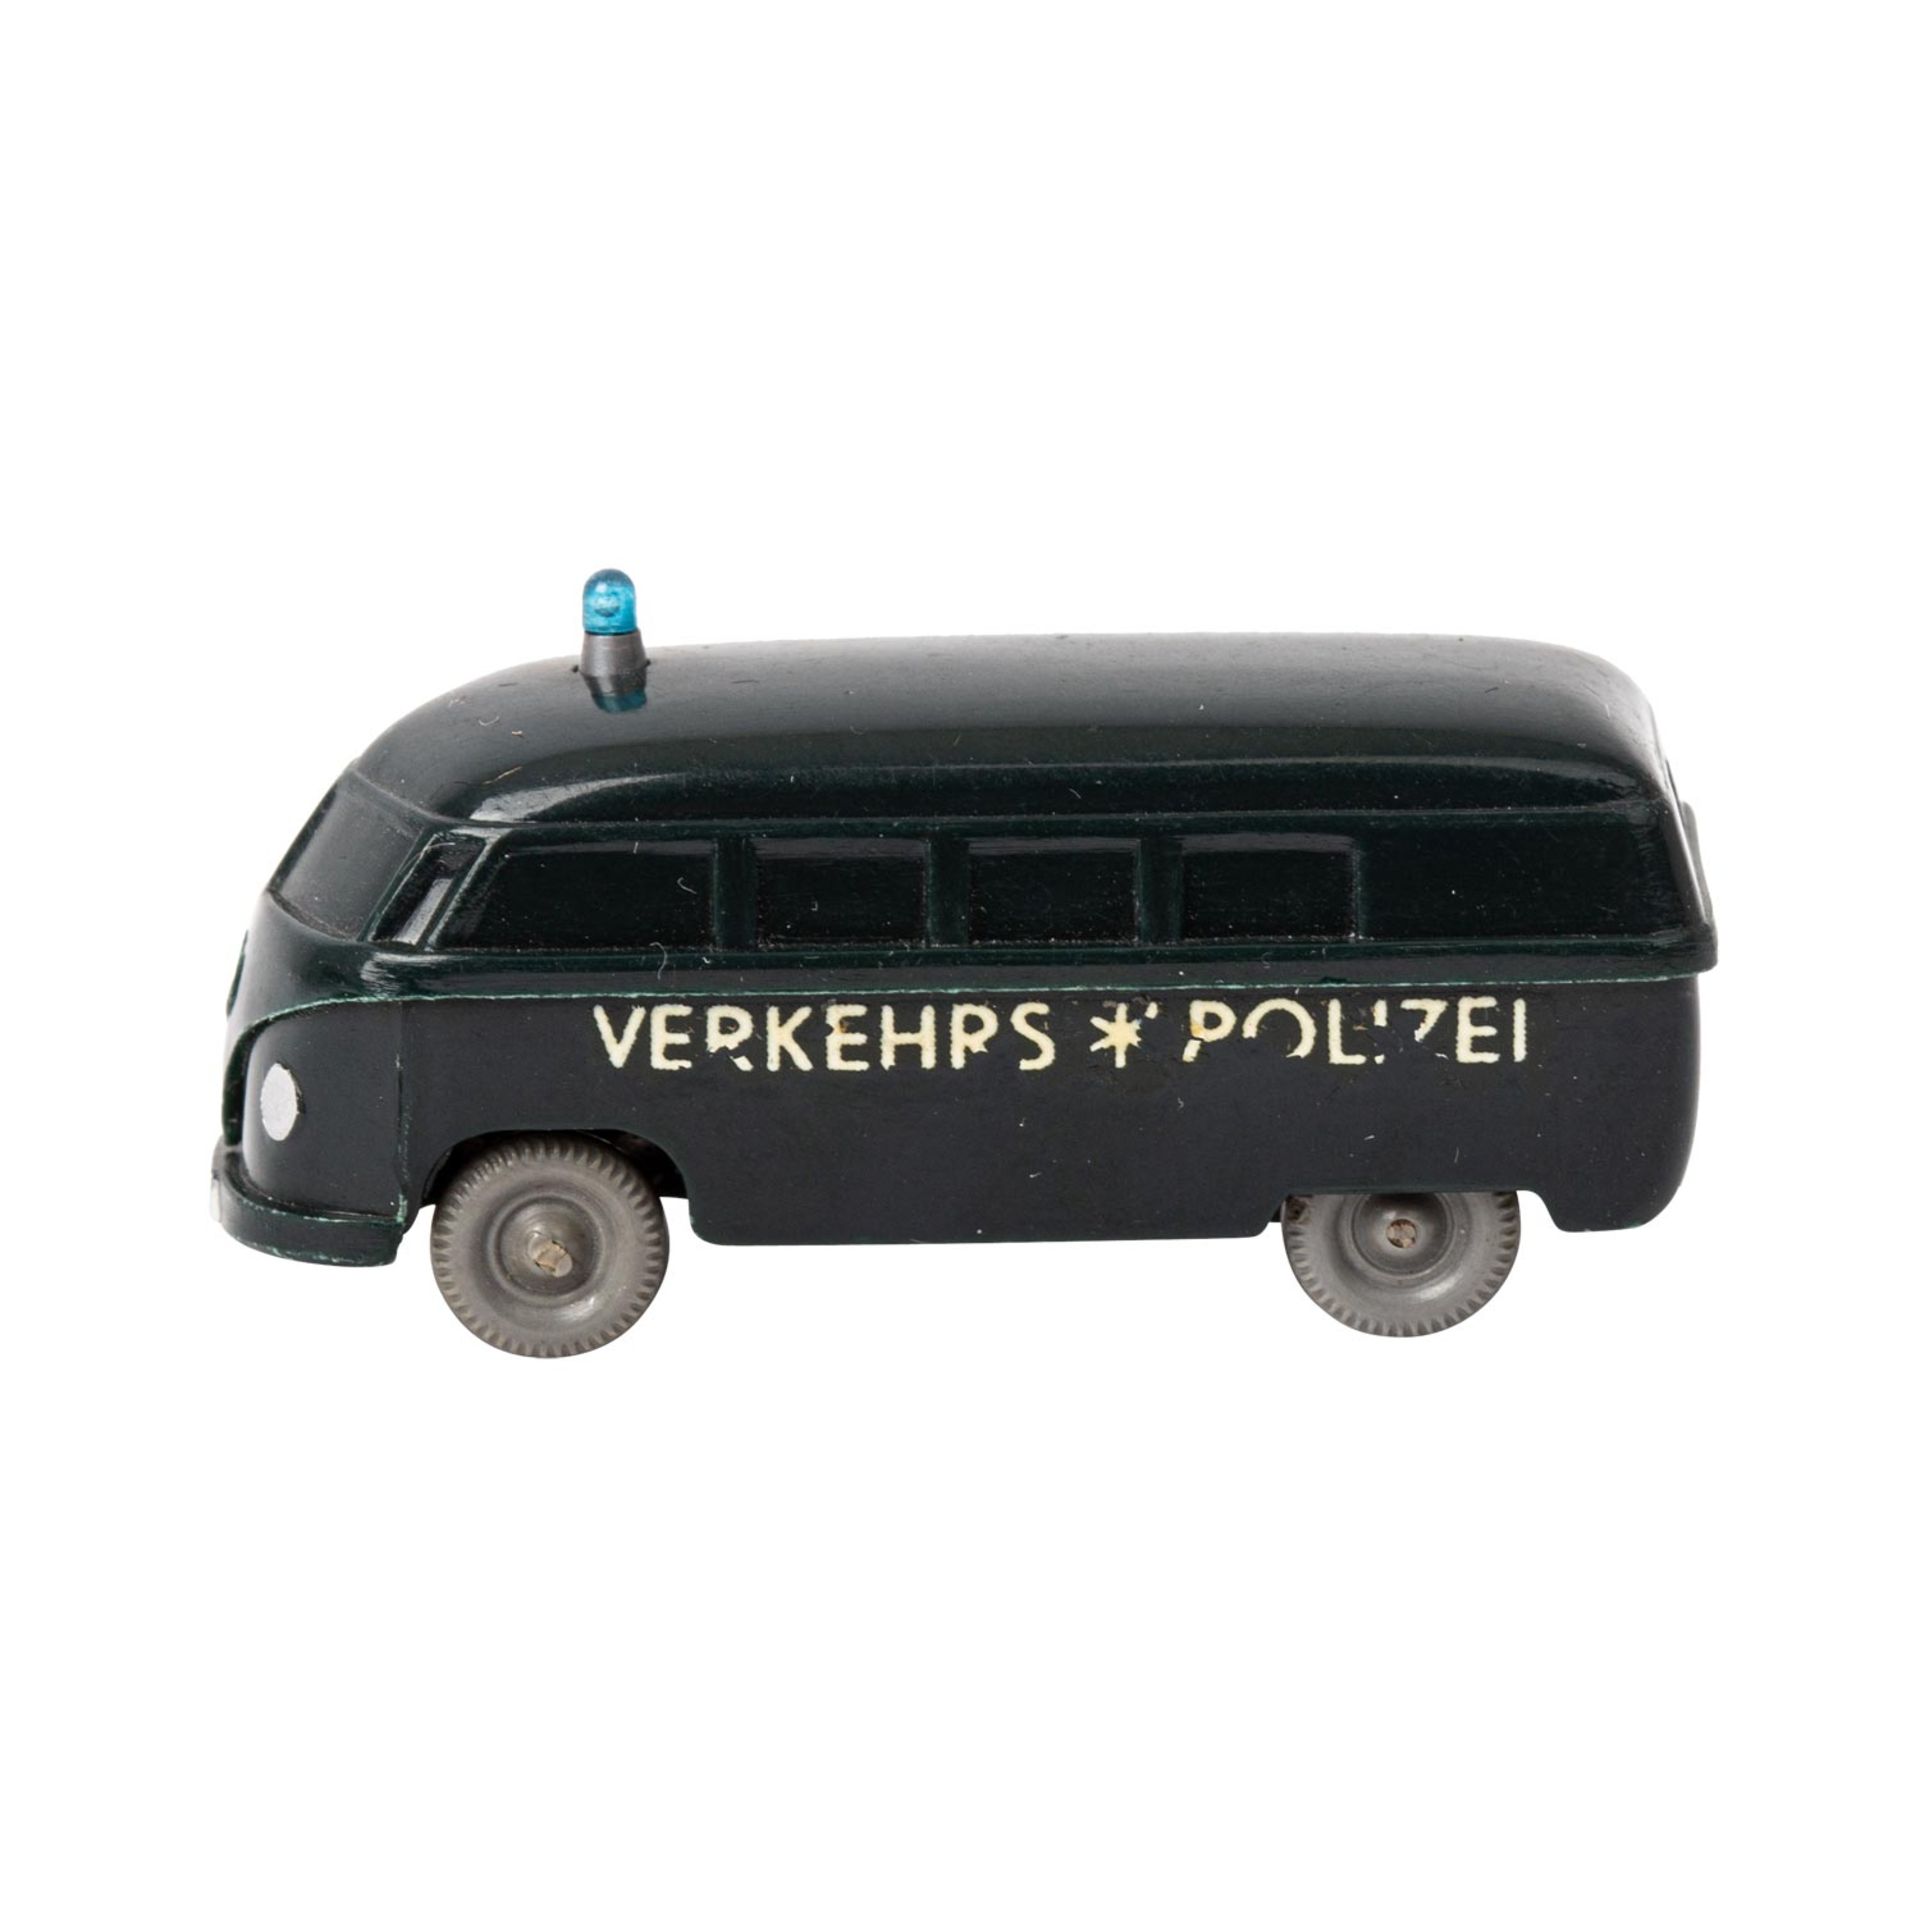 WIKING Polizei-Unfallwagen, 1959/60,unverglaster Rollachser, VW-Bus, schwarzgrüne Kar - Image 2 of 5